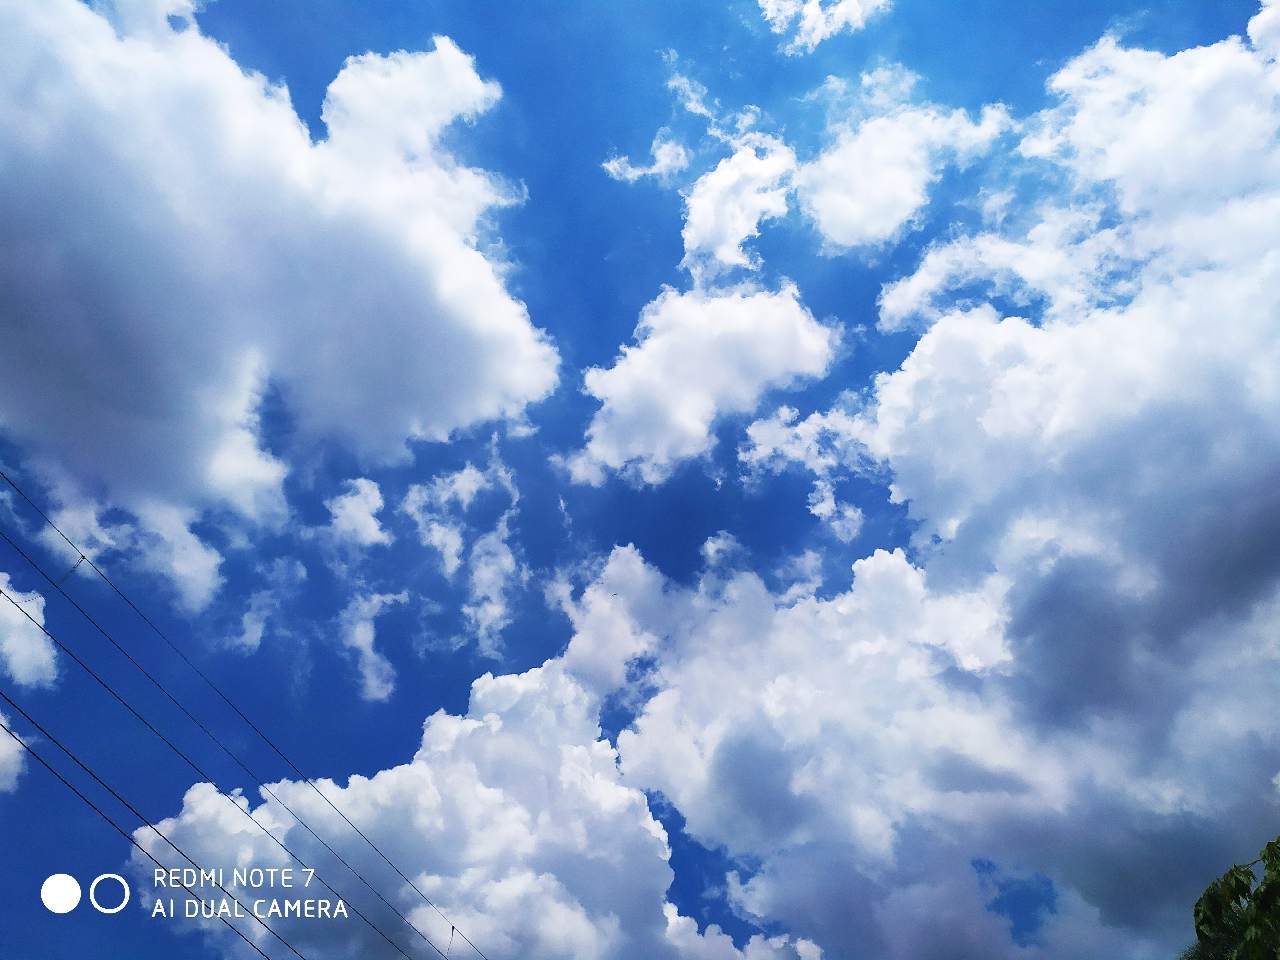 Bầu trời xanh tươi mát với mây trắng nhẹ nhàng tỏa sáng giữa những vạt nắng ấm. Đây là một tác phẩm nghệ thuật thiên nhiên đầy mê hoặc. Thật tuyệt vời khi có thể chiêm ngưỡng ảnh trời xanh ấy, tạo niềm tin vào cuộc sống tươi đẹp hơn trong tương lai.